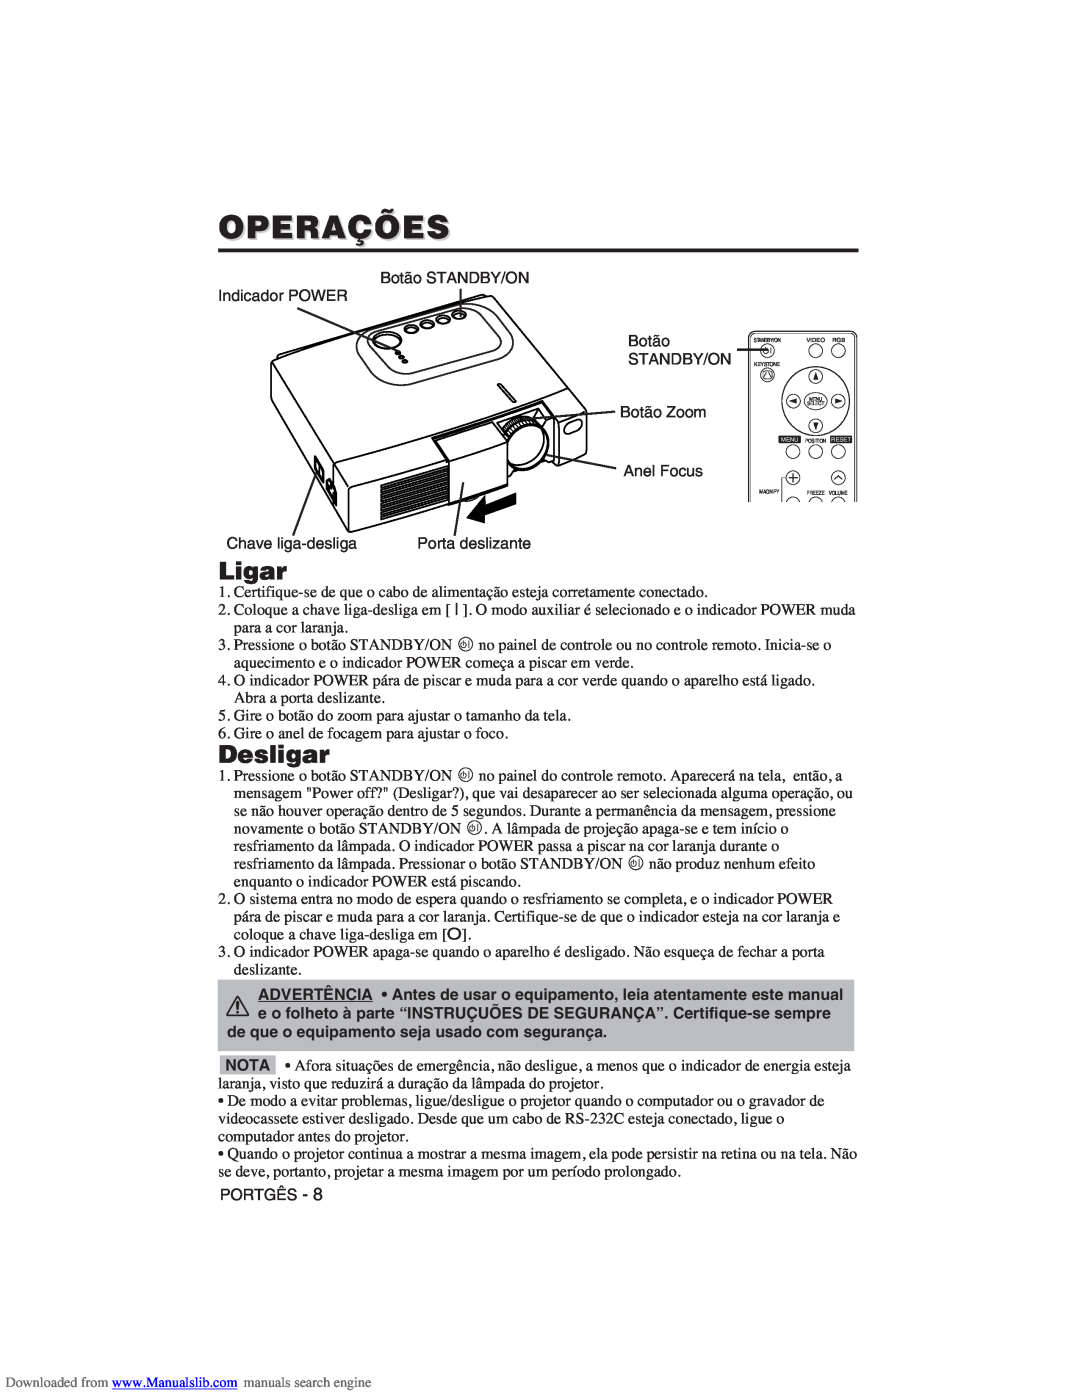 Hitachi CP-X275W user manual Operações, Ligar, Desligar 